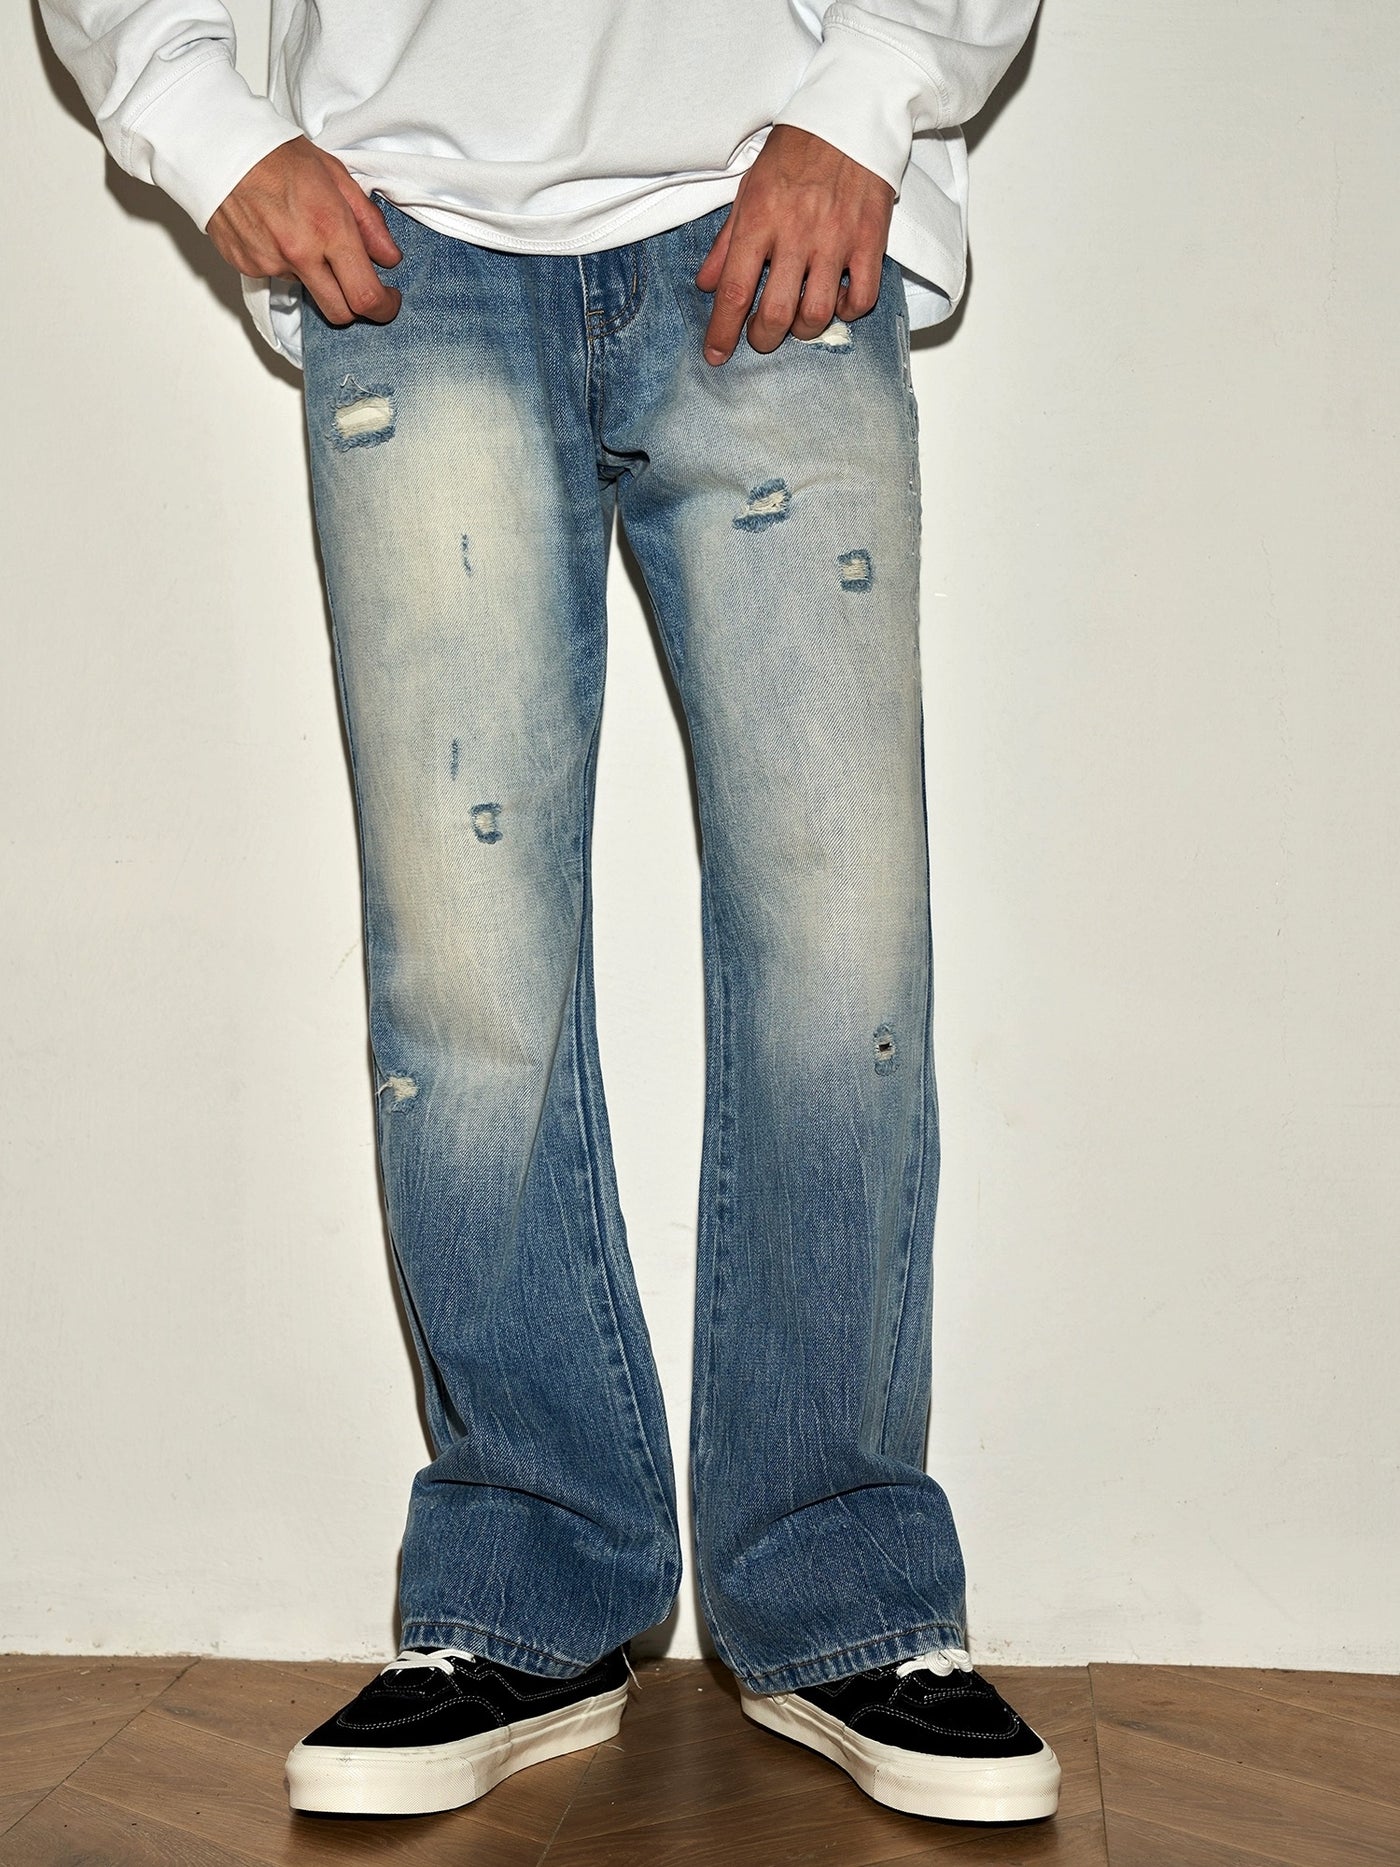 DONCARE(AFGK) "Disdressed denim jeans"